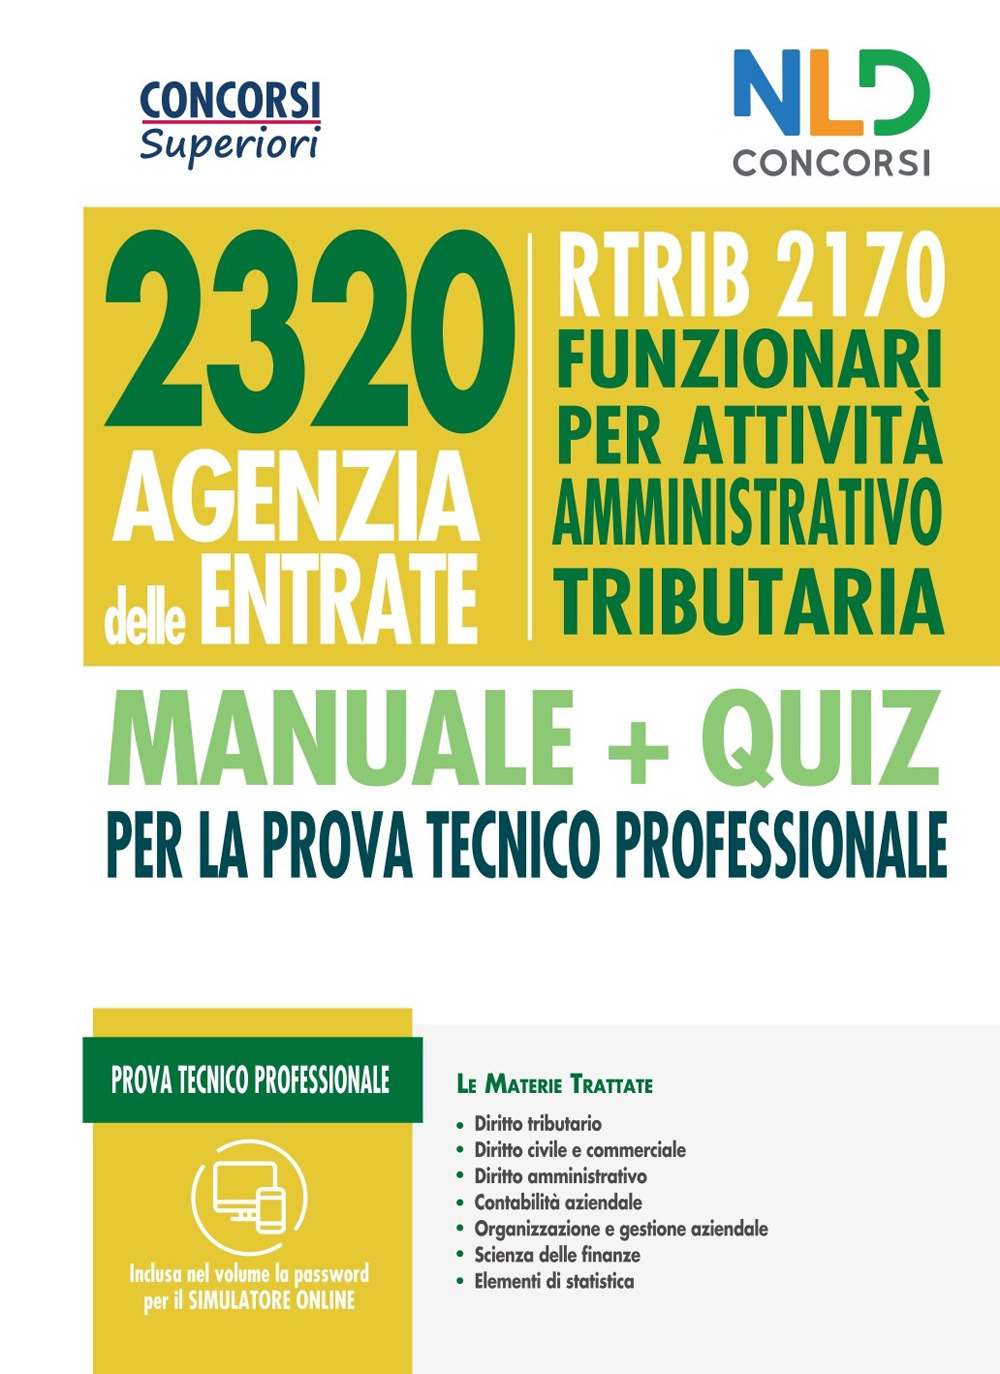 Concorso 2320 Agenzia delle Entrate. RTRIB2170 funzionari per attività amministrativo tributaria. Manuale + quiz completo per la prova tecnico professionale